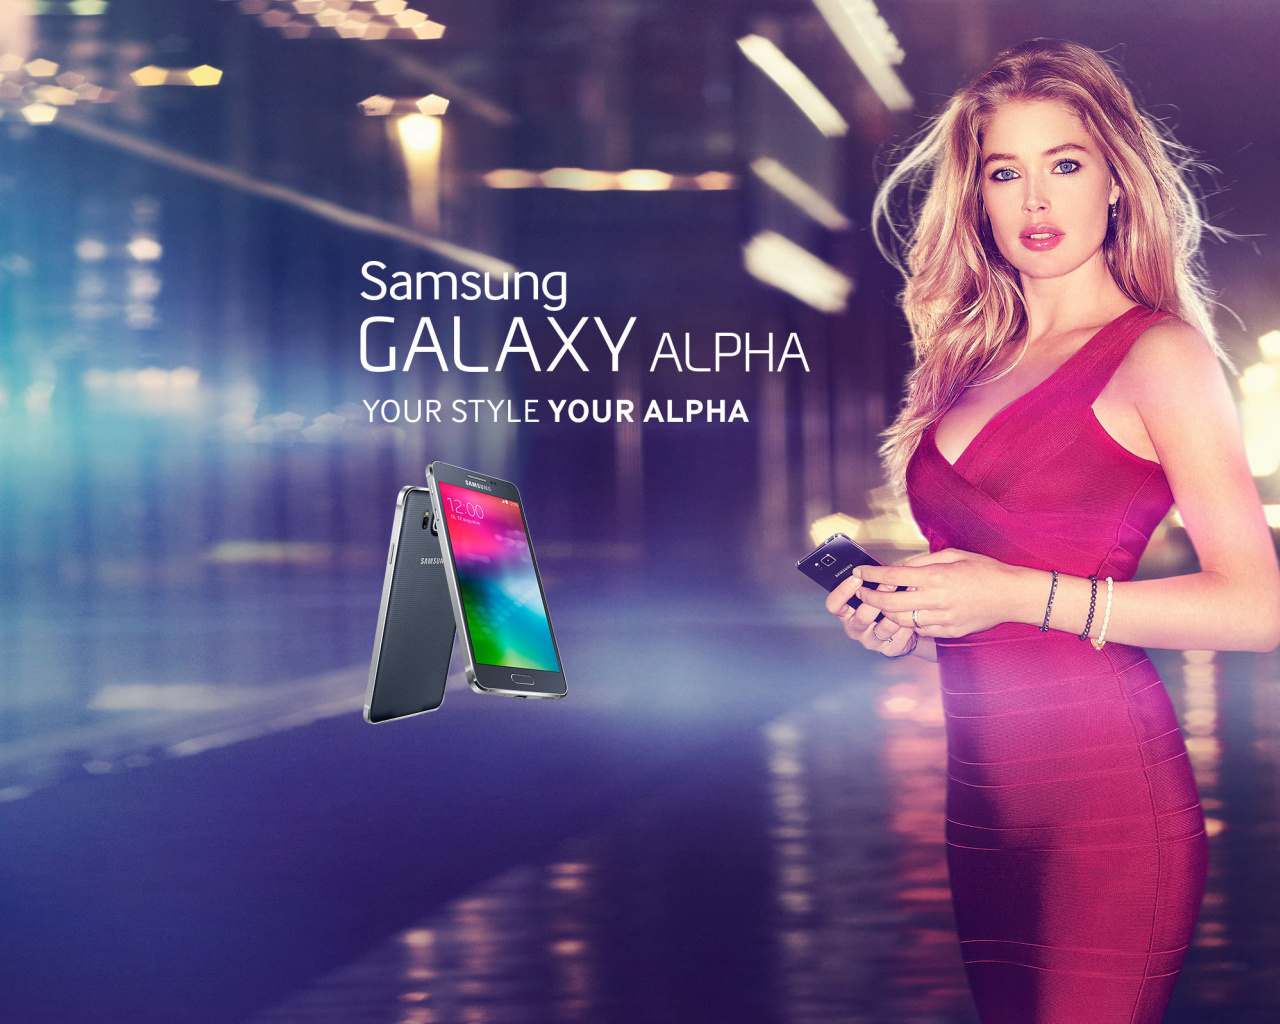 Das Samsung Galaxy Alpha Advertisement with Doutzen Kroes Wallpaper 1280x1024